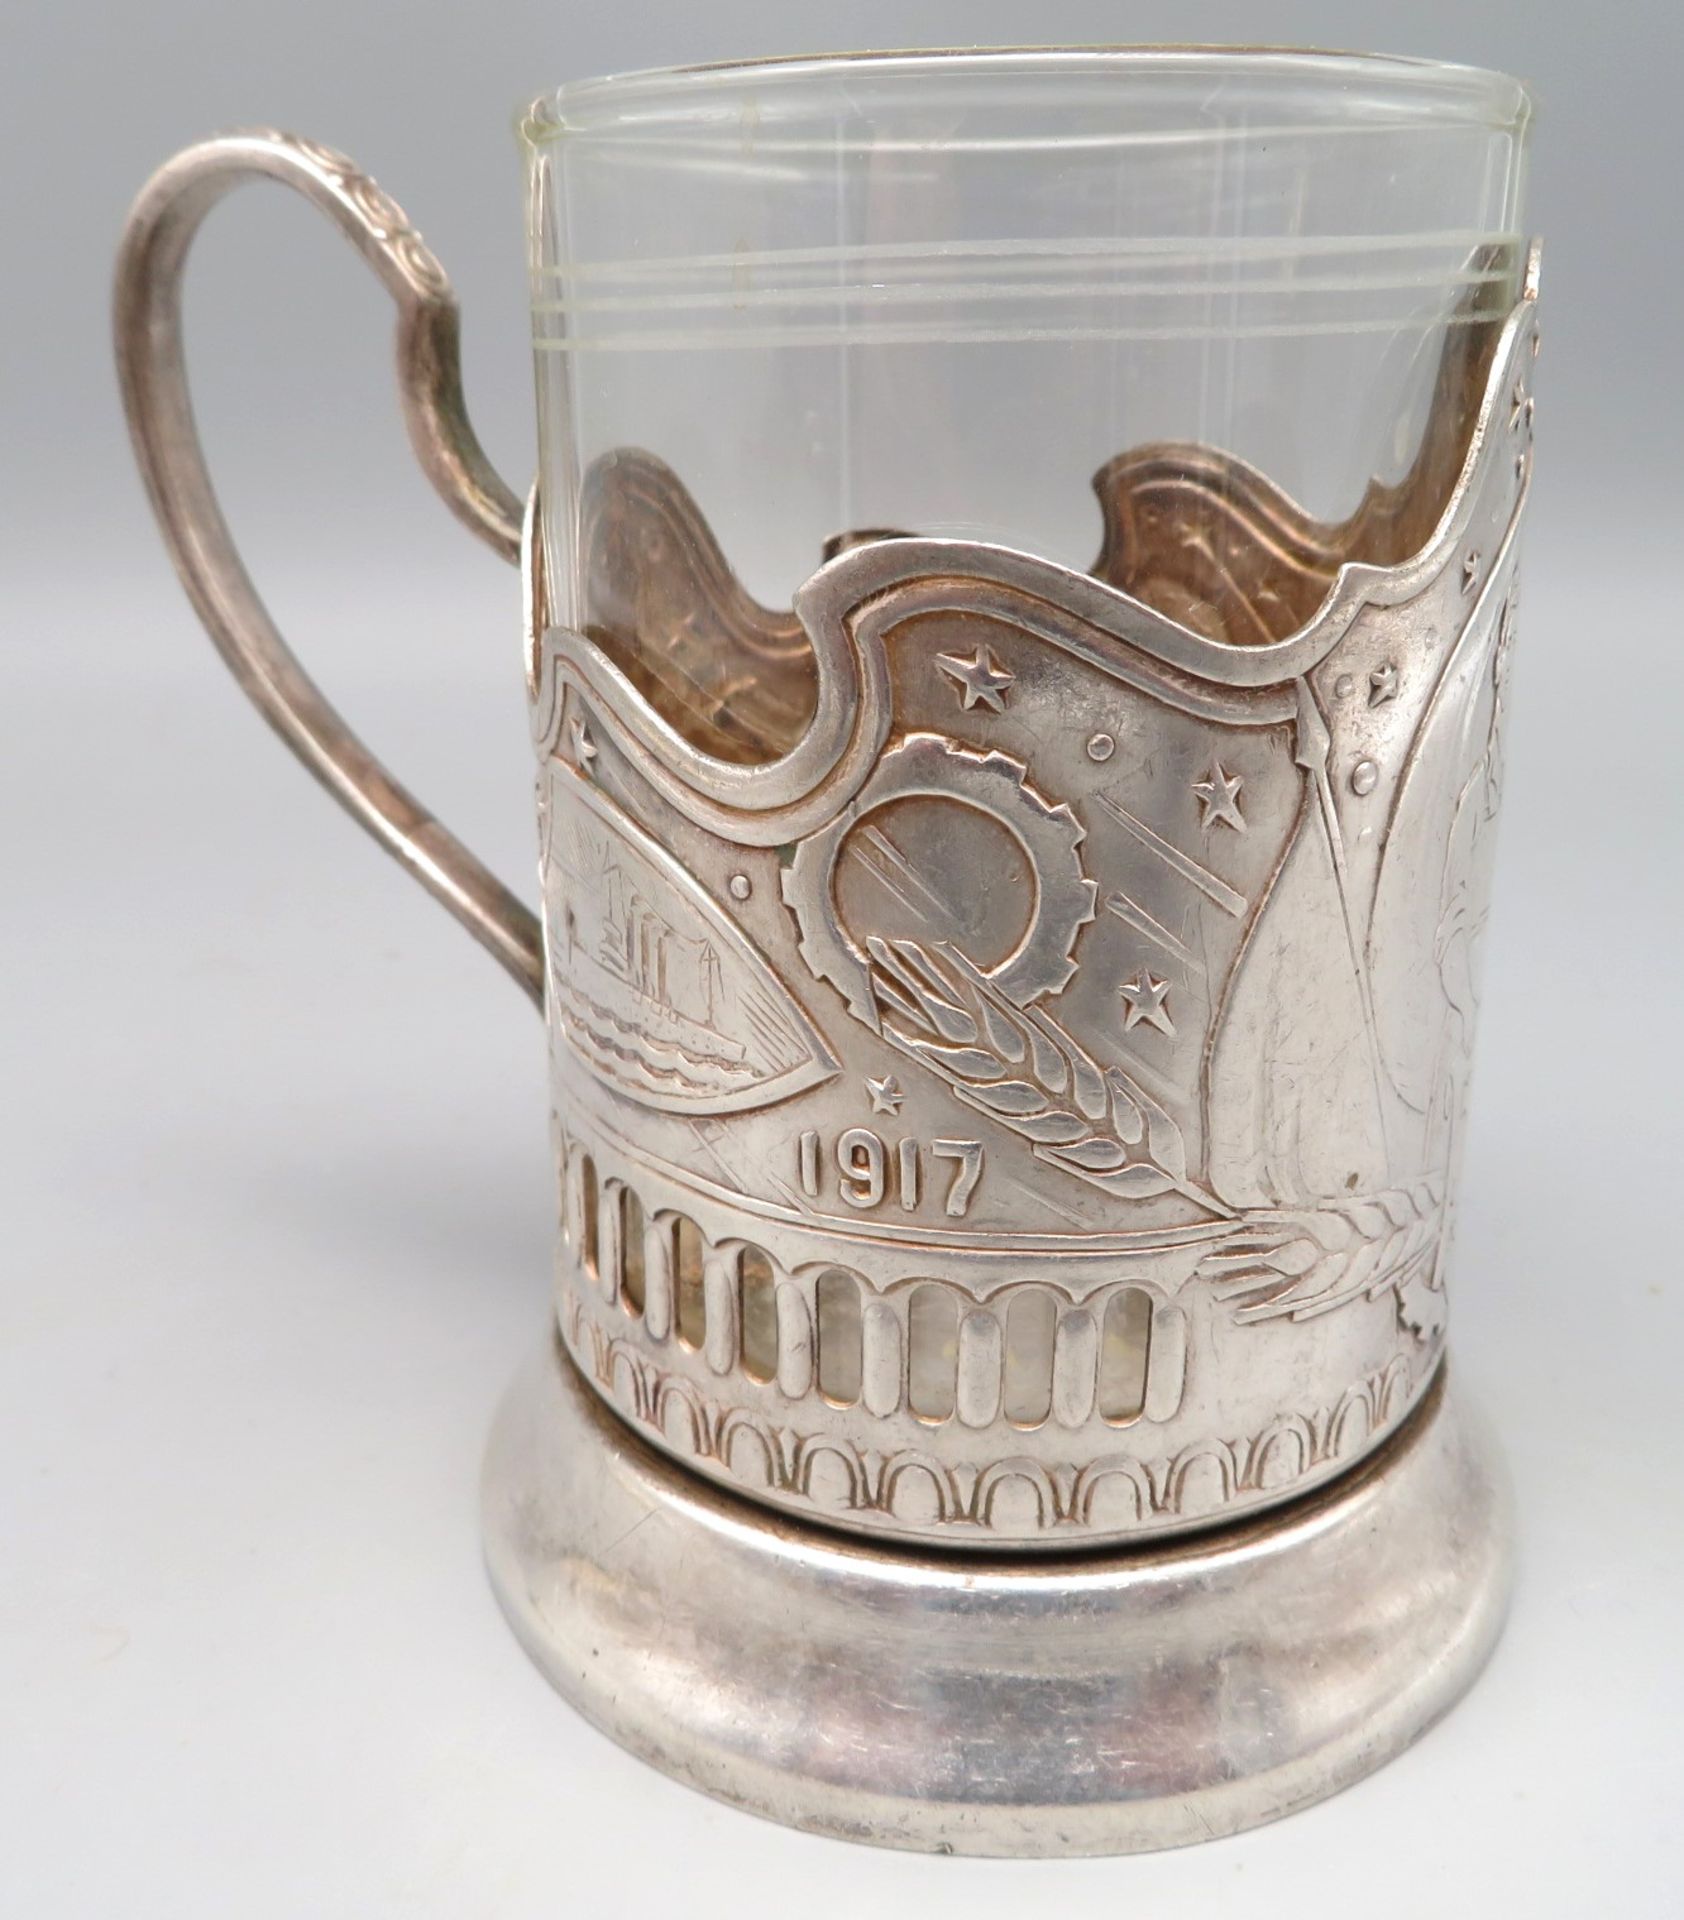 Teeglashalter, Russland, versilberte Montur mit Reliefdekor von Sputnik, gem., h 11 cm, d 11 cm. - Bild 3 aus 4